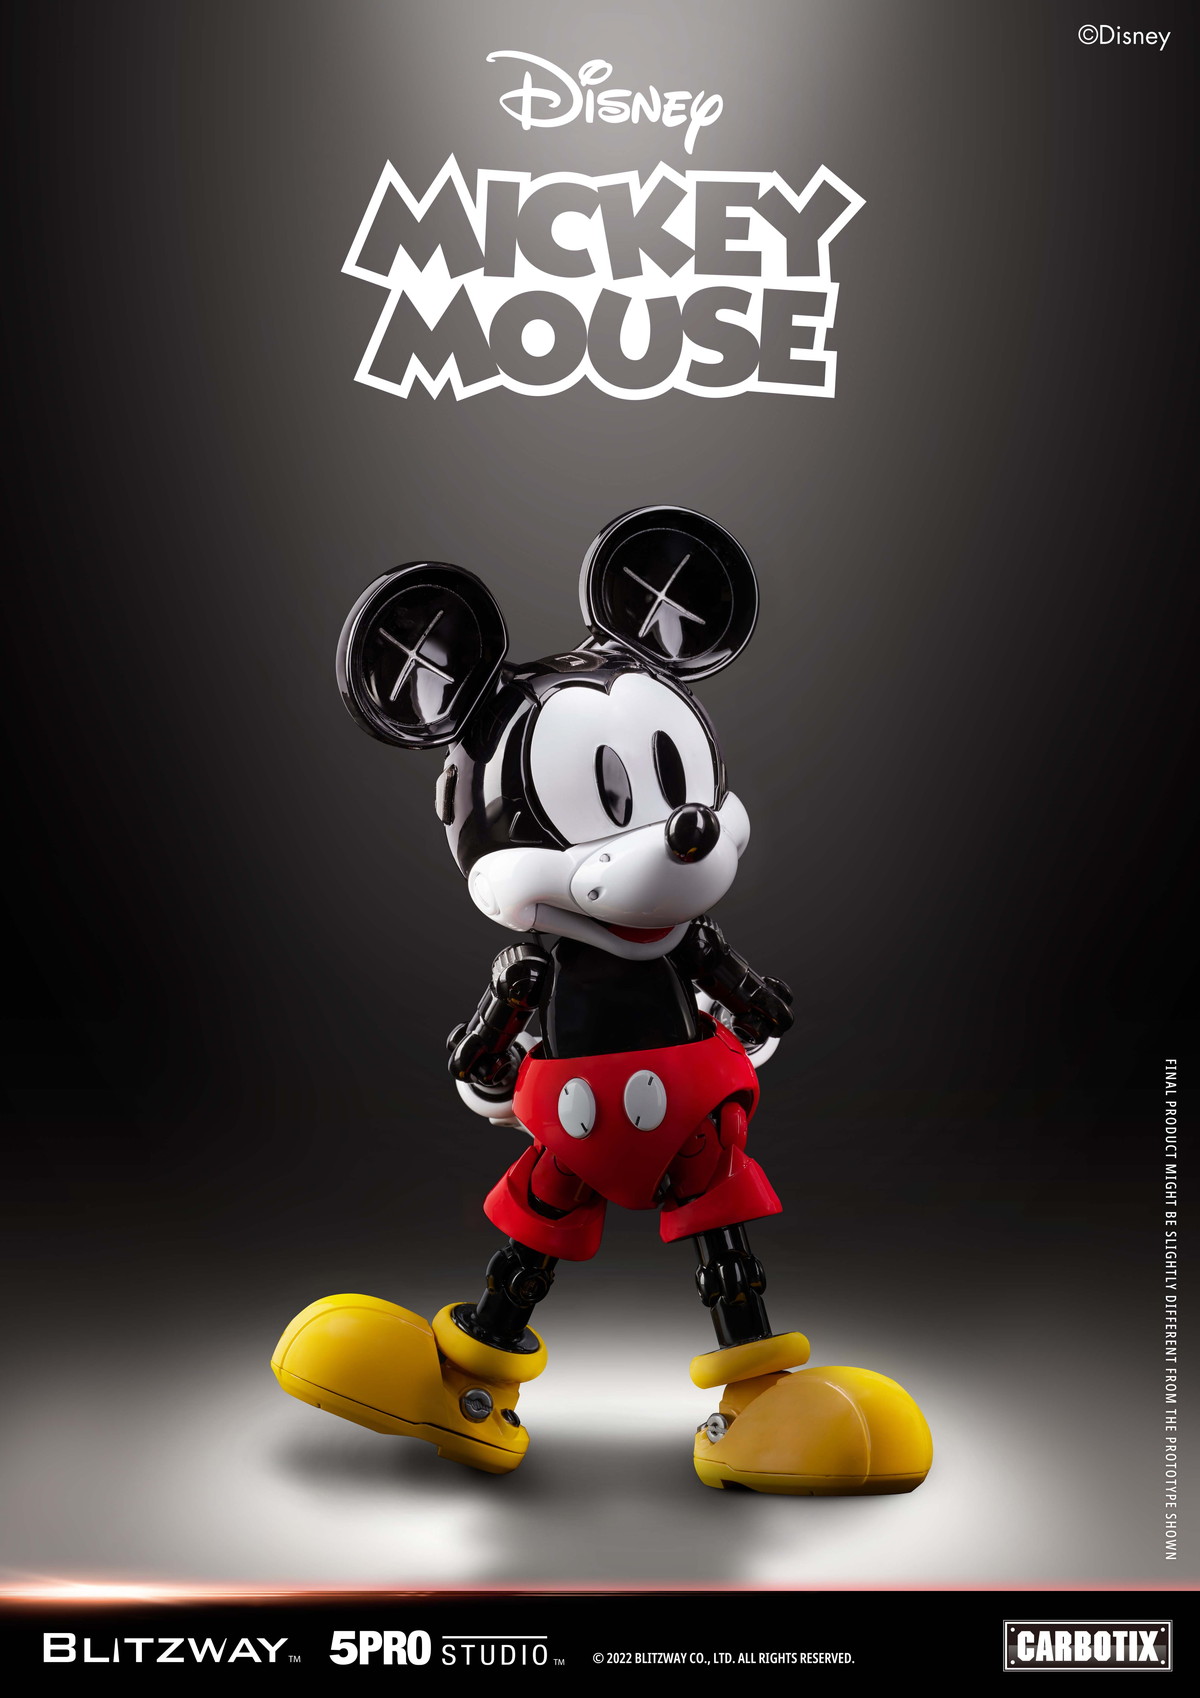 ディズニー「CARBOTIX ミッキーマウス」のフィギュア画像